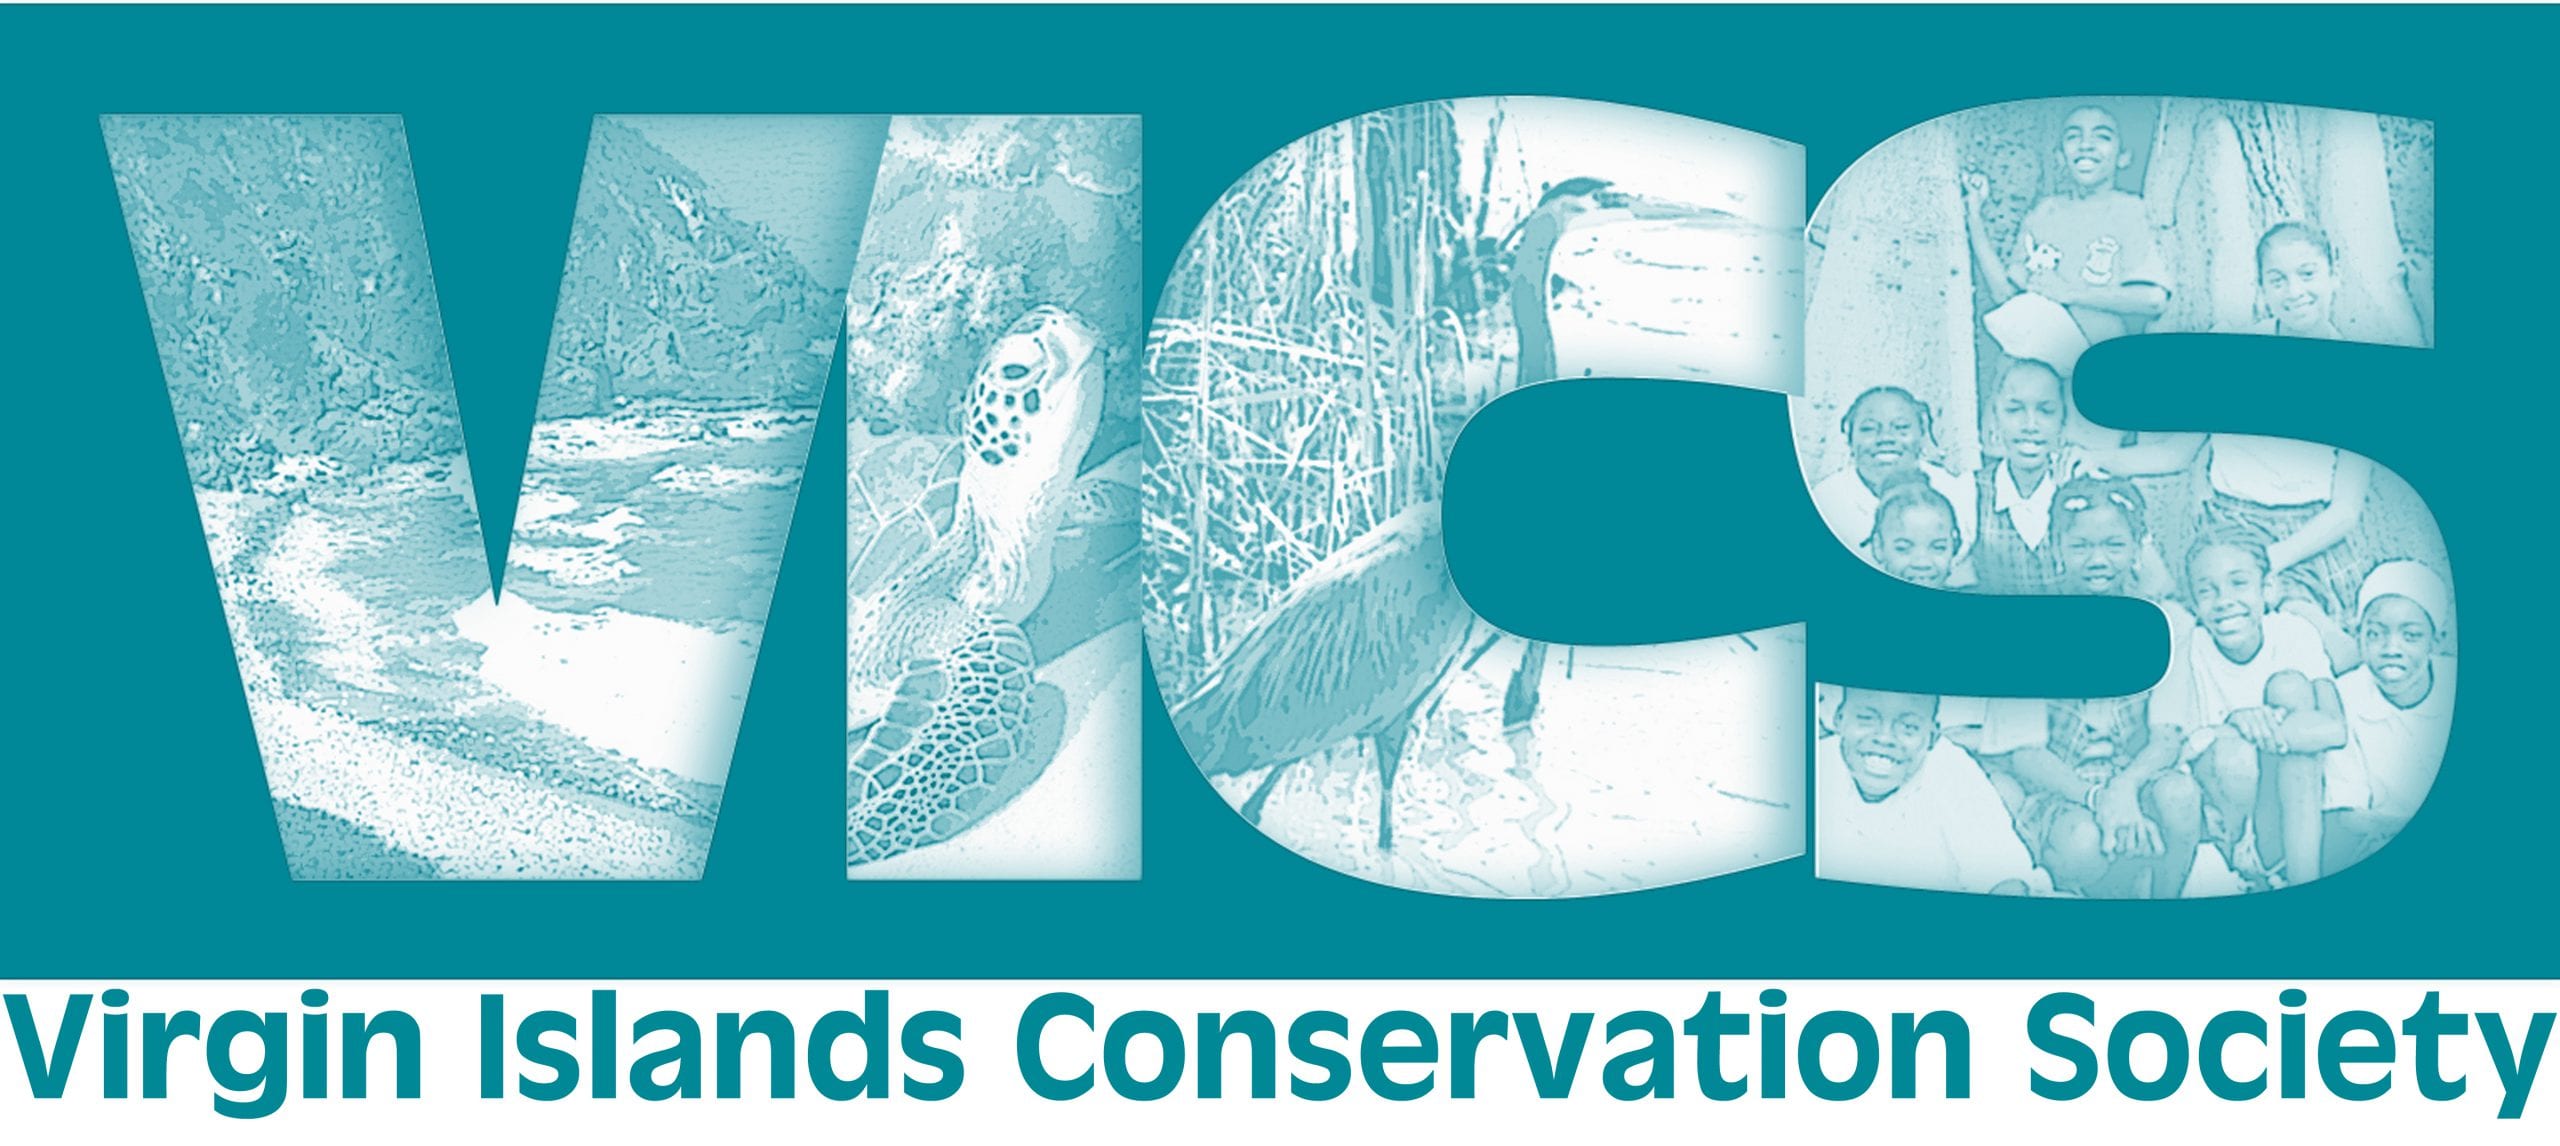 Virgin Islands Conservation Society Logo